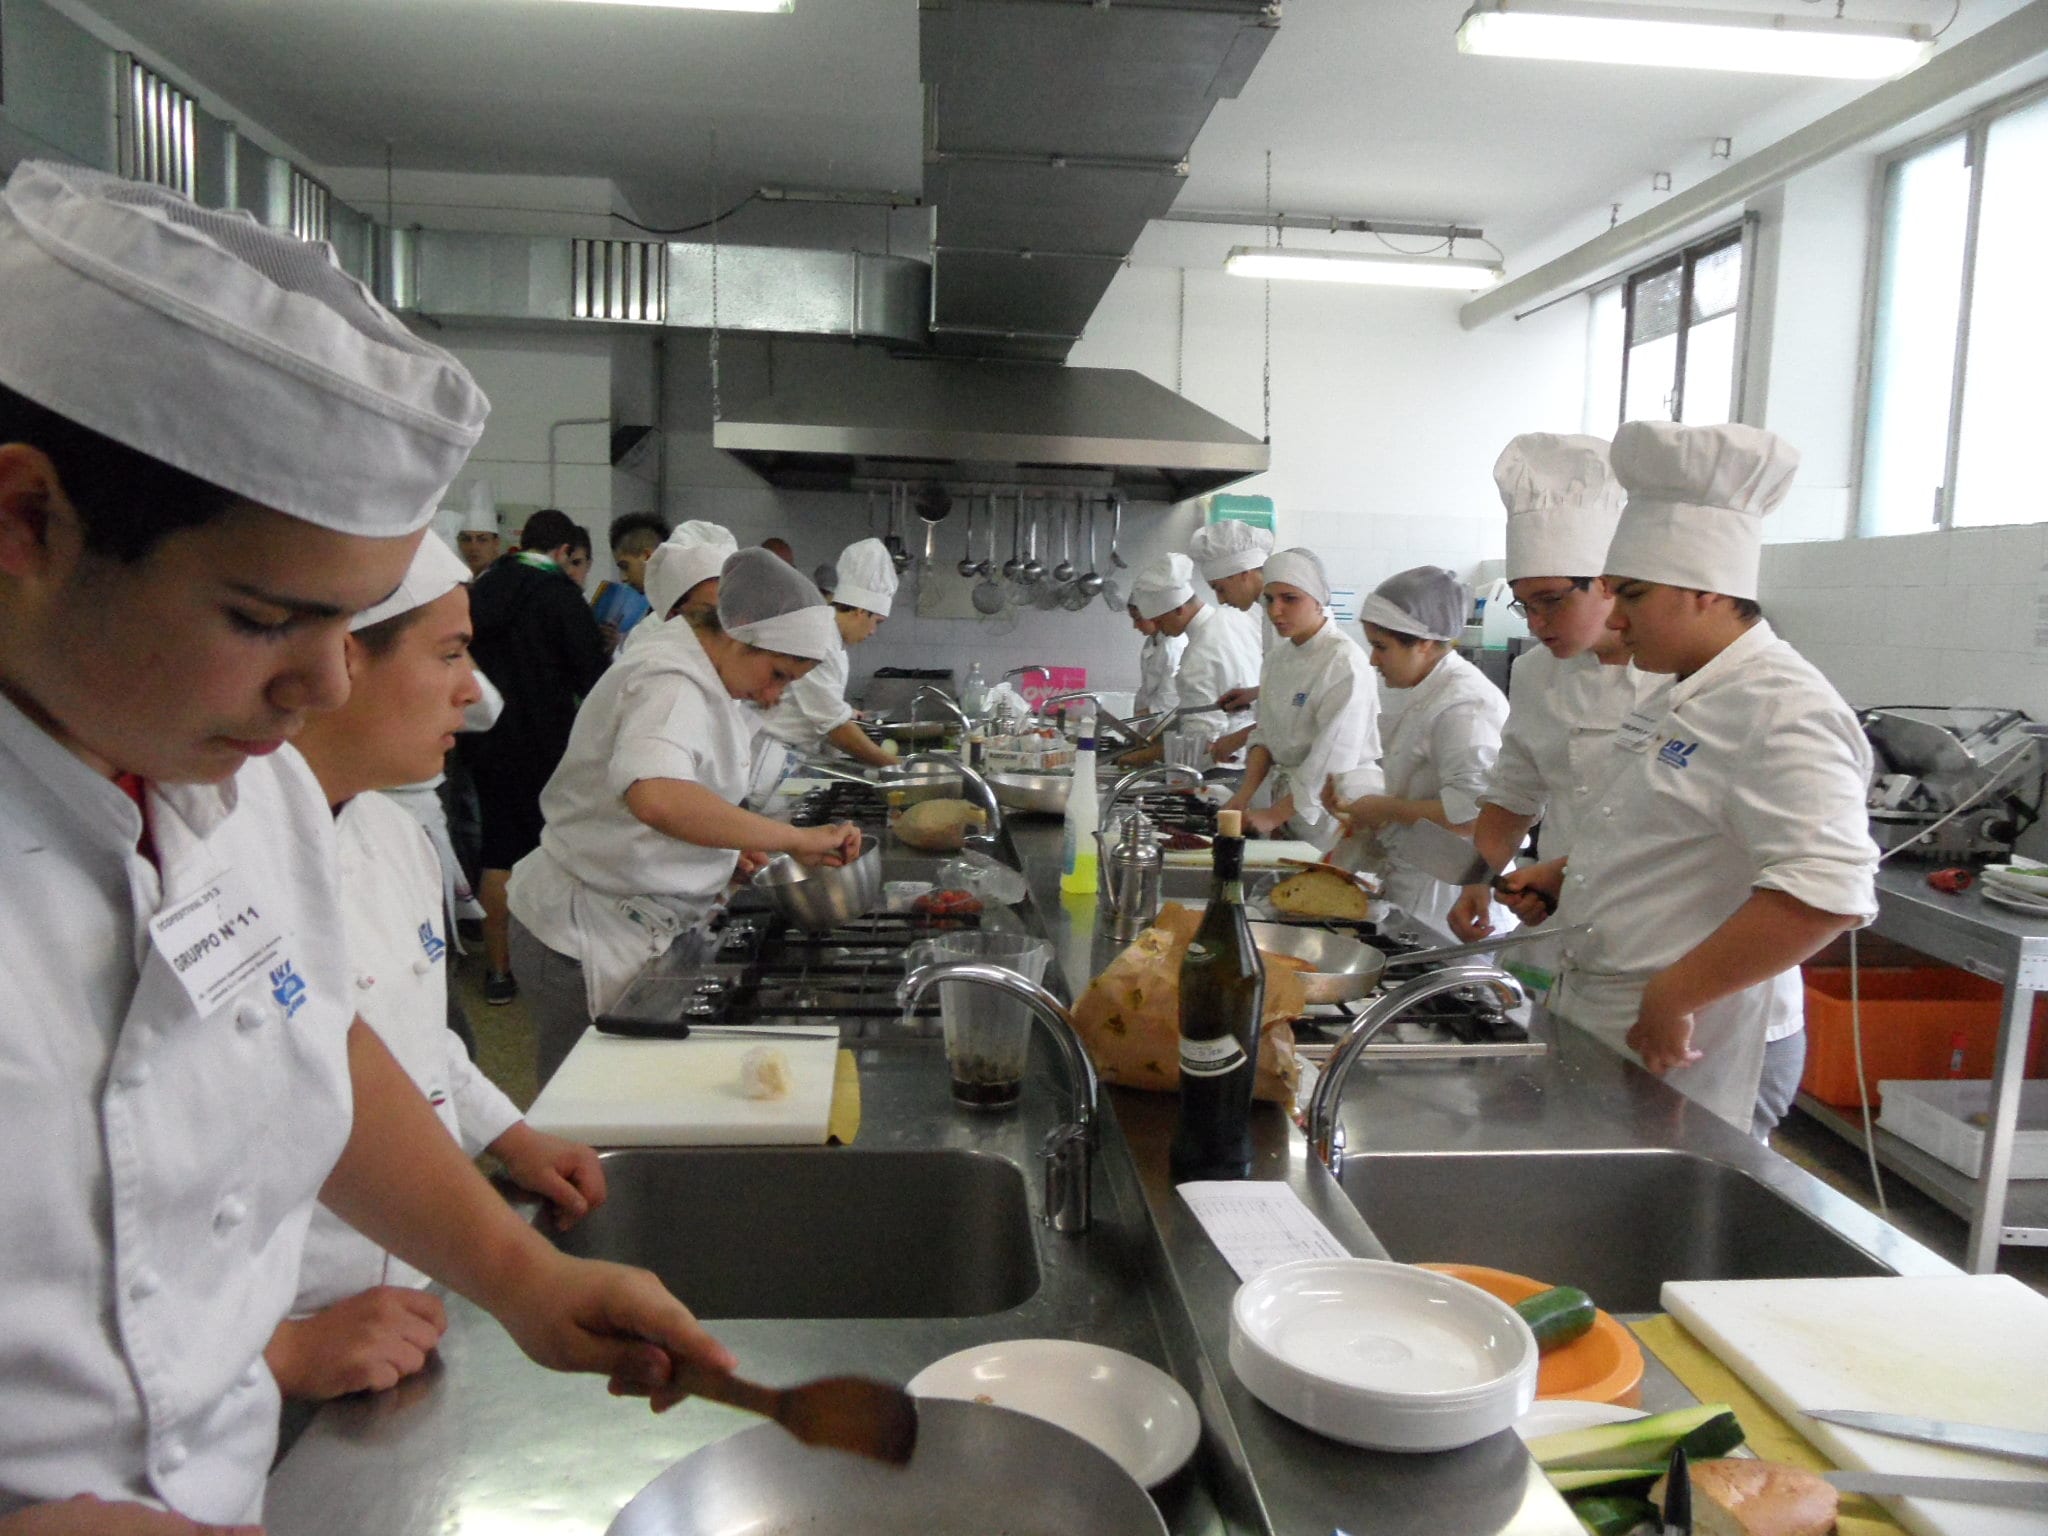 Ecofestival: dal risotto al tagliando si sfidano gli studenti. IlSaronno in giuria